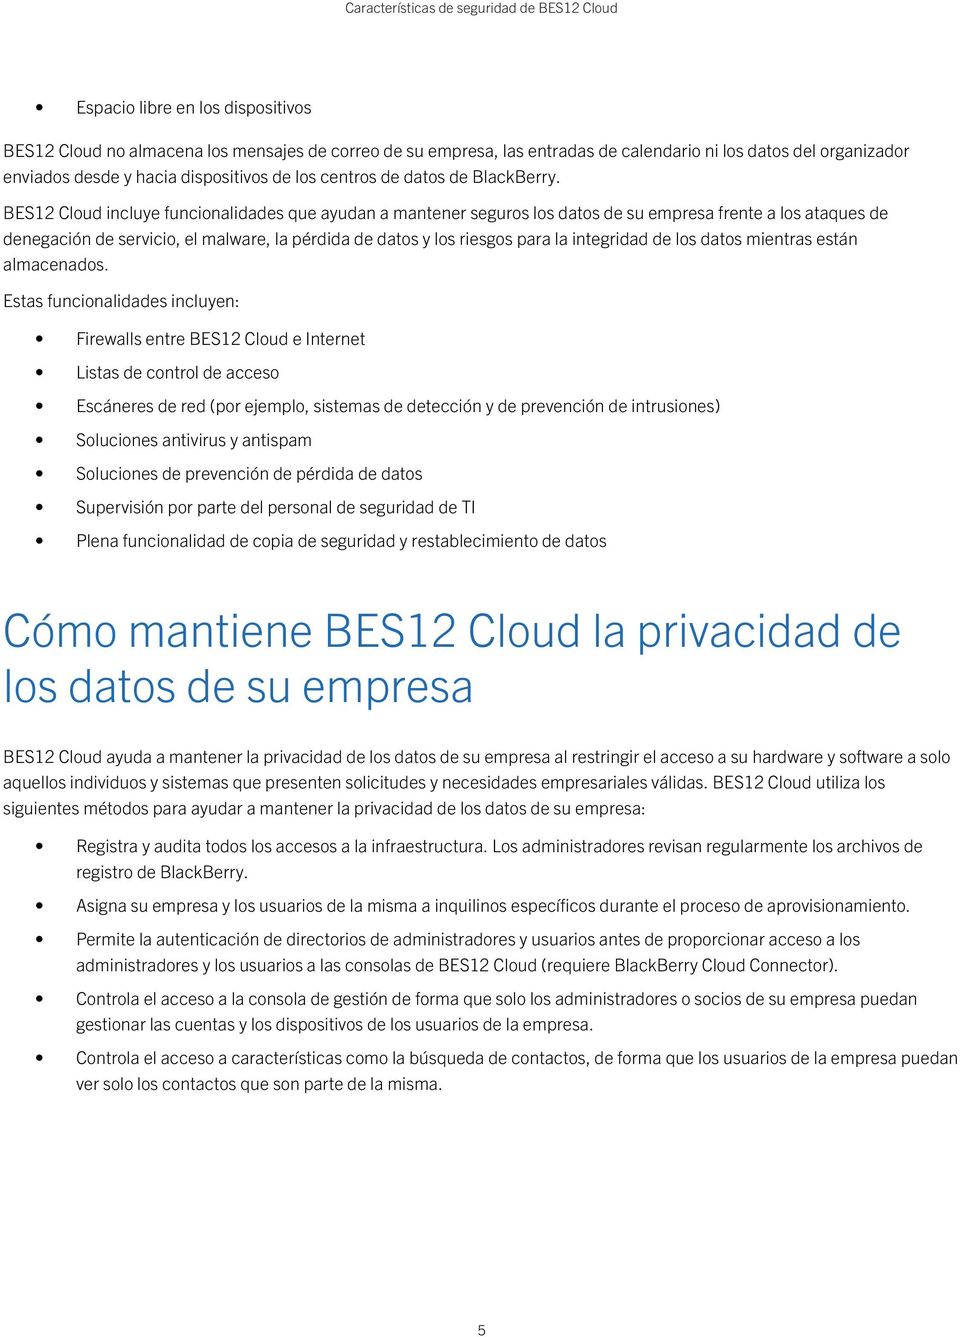 BES12 Cloud incluye funcionalidades que ayudan a mantener seguros los datos de su empresa frente a los ataques de denegación de servicio, el malware, la pérdida de datos y los riesgos para la